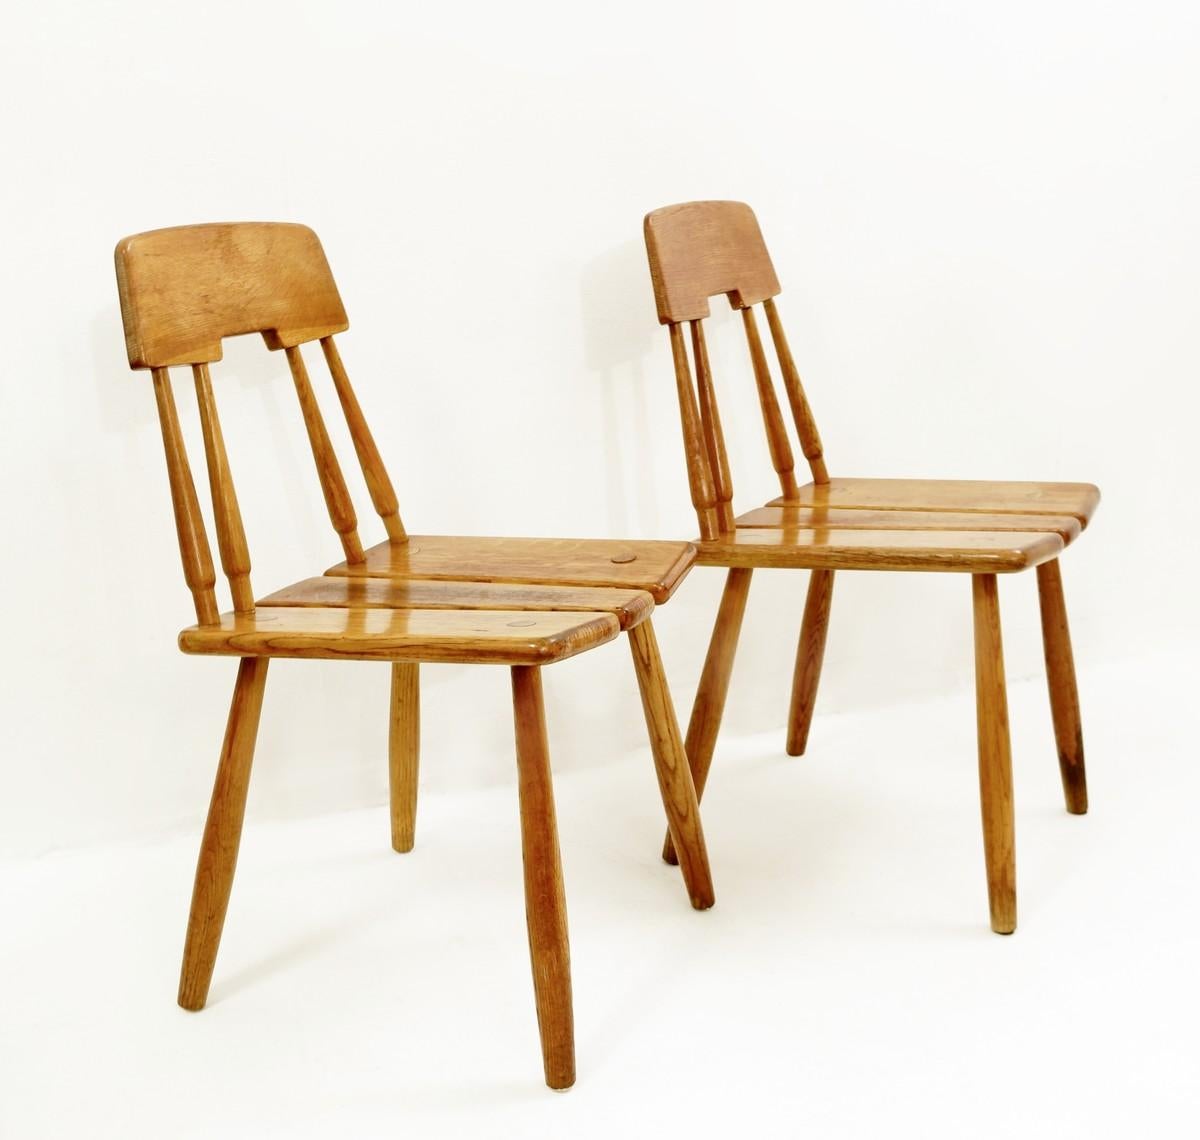 Chaises Carl-Gustav Boulogner en chêne. Produit par AB Bröderna Wigells stolfabrik. 1950s une paire disponible
Vendu à la pièce